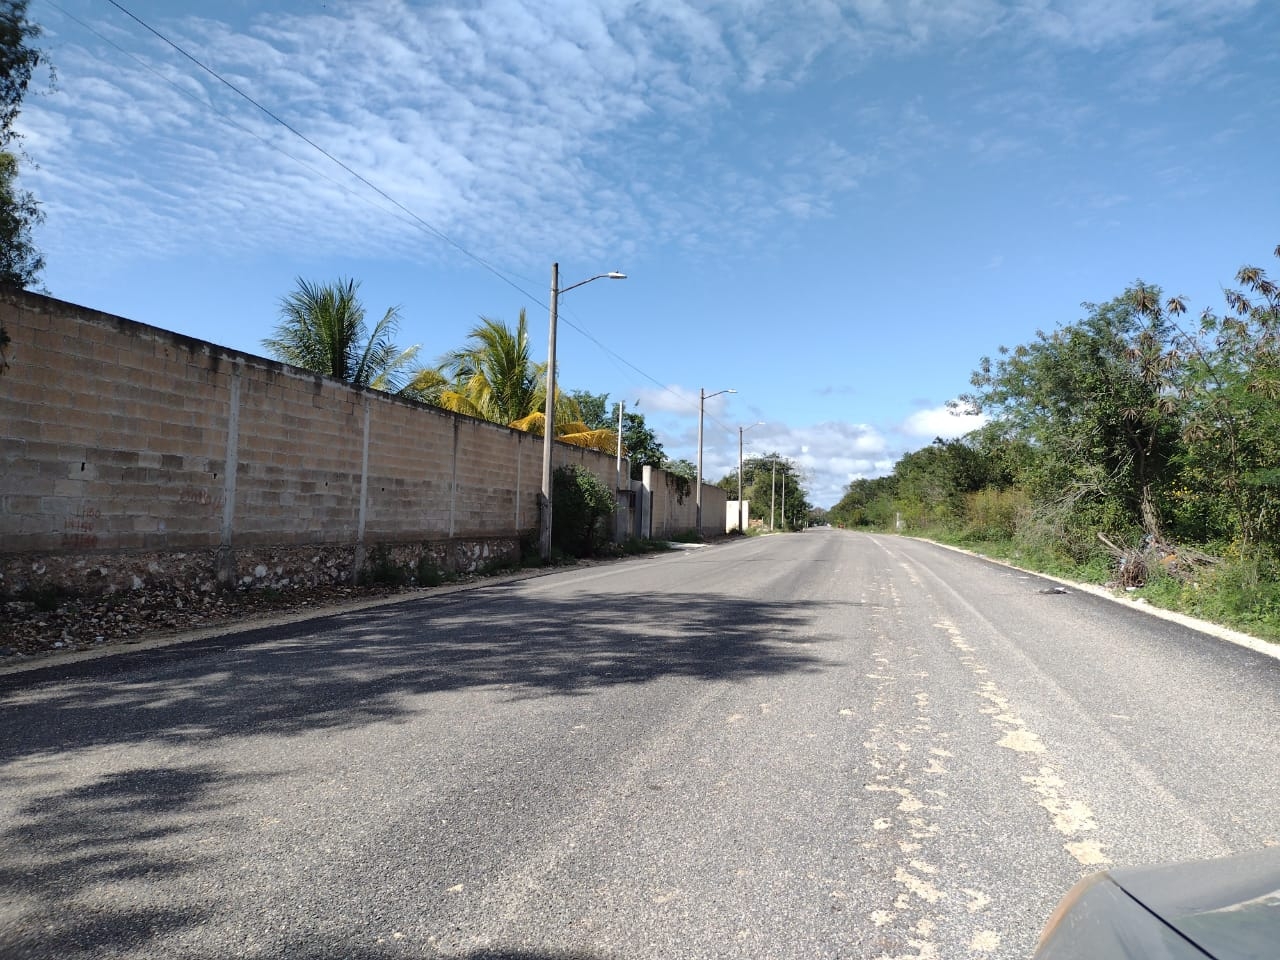 Obras a 'medias' causa molestia a vecinos en Felipe Carrillo Puerto